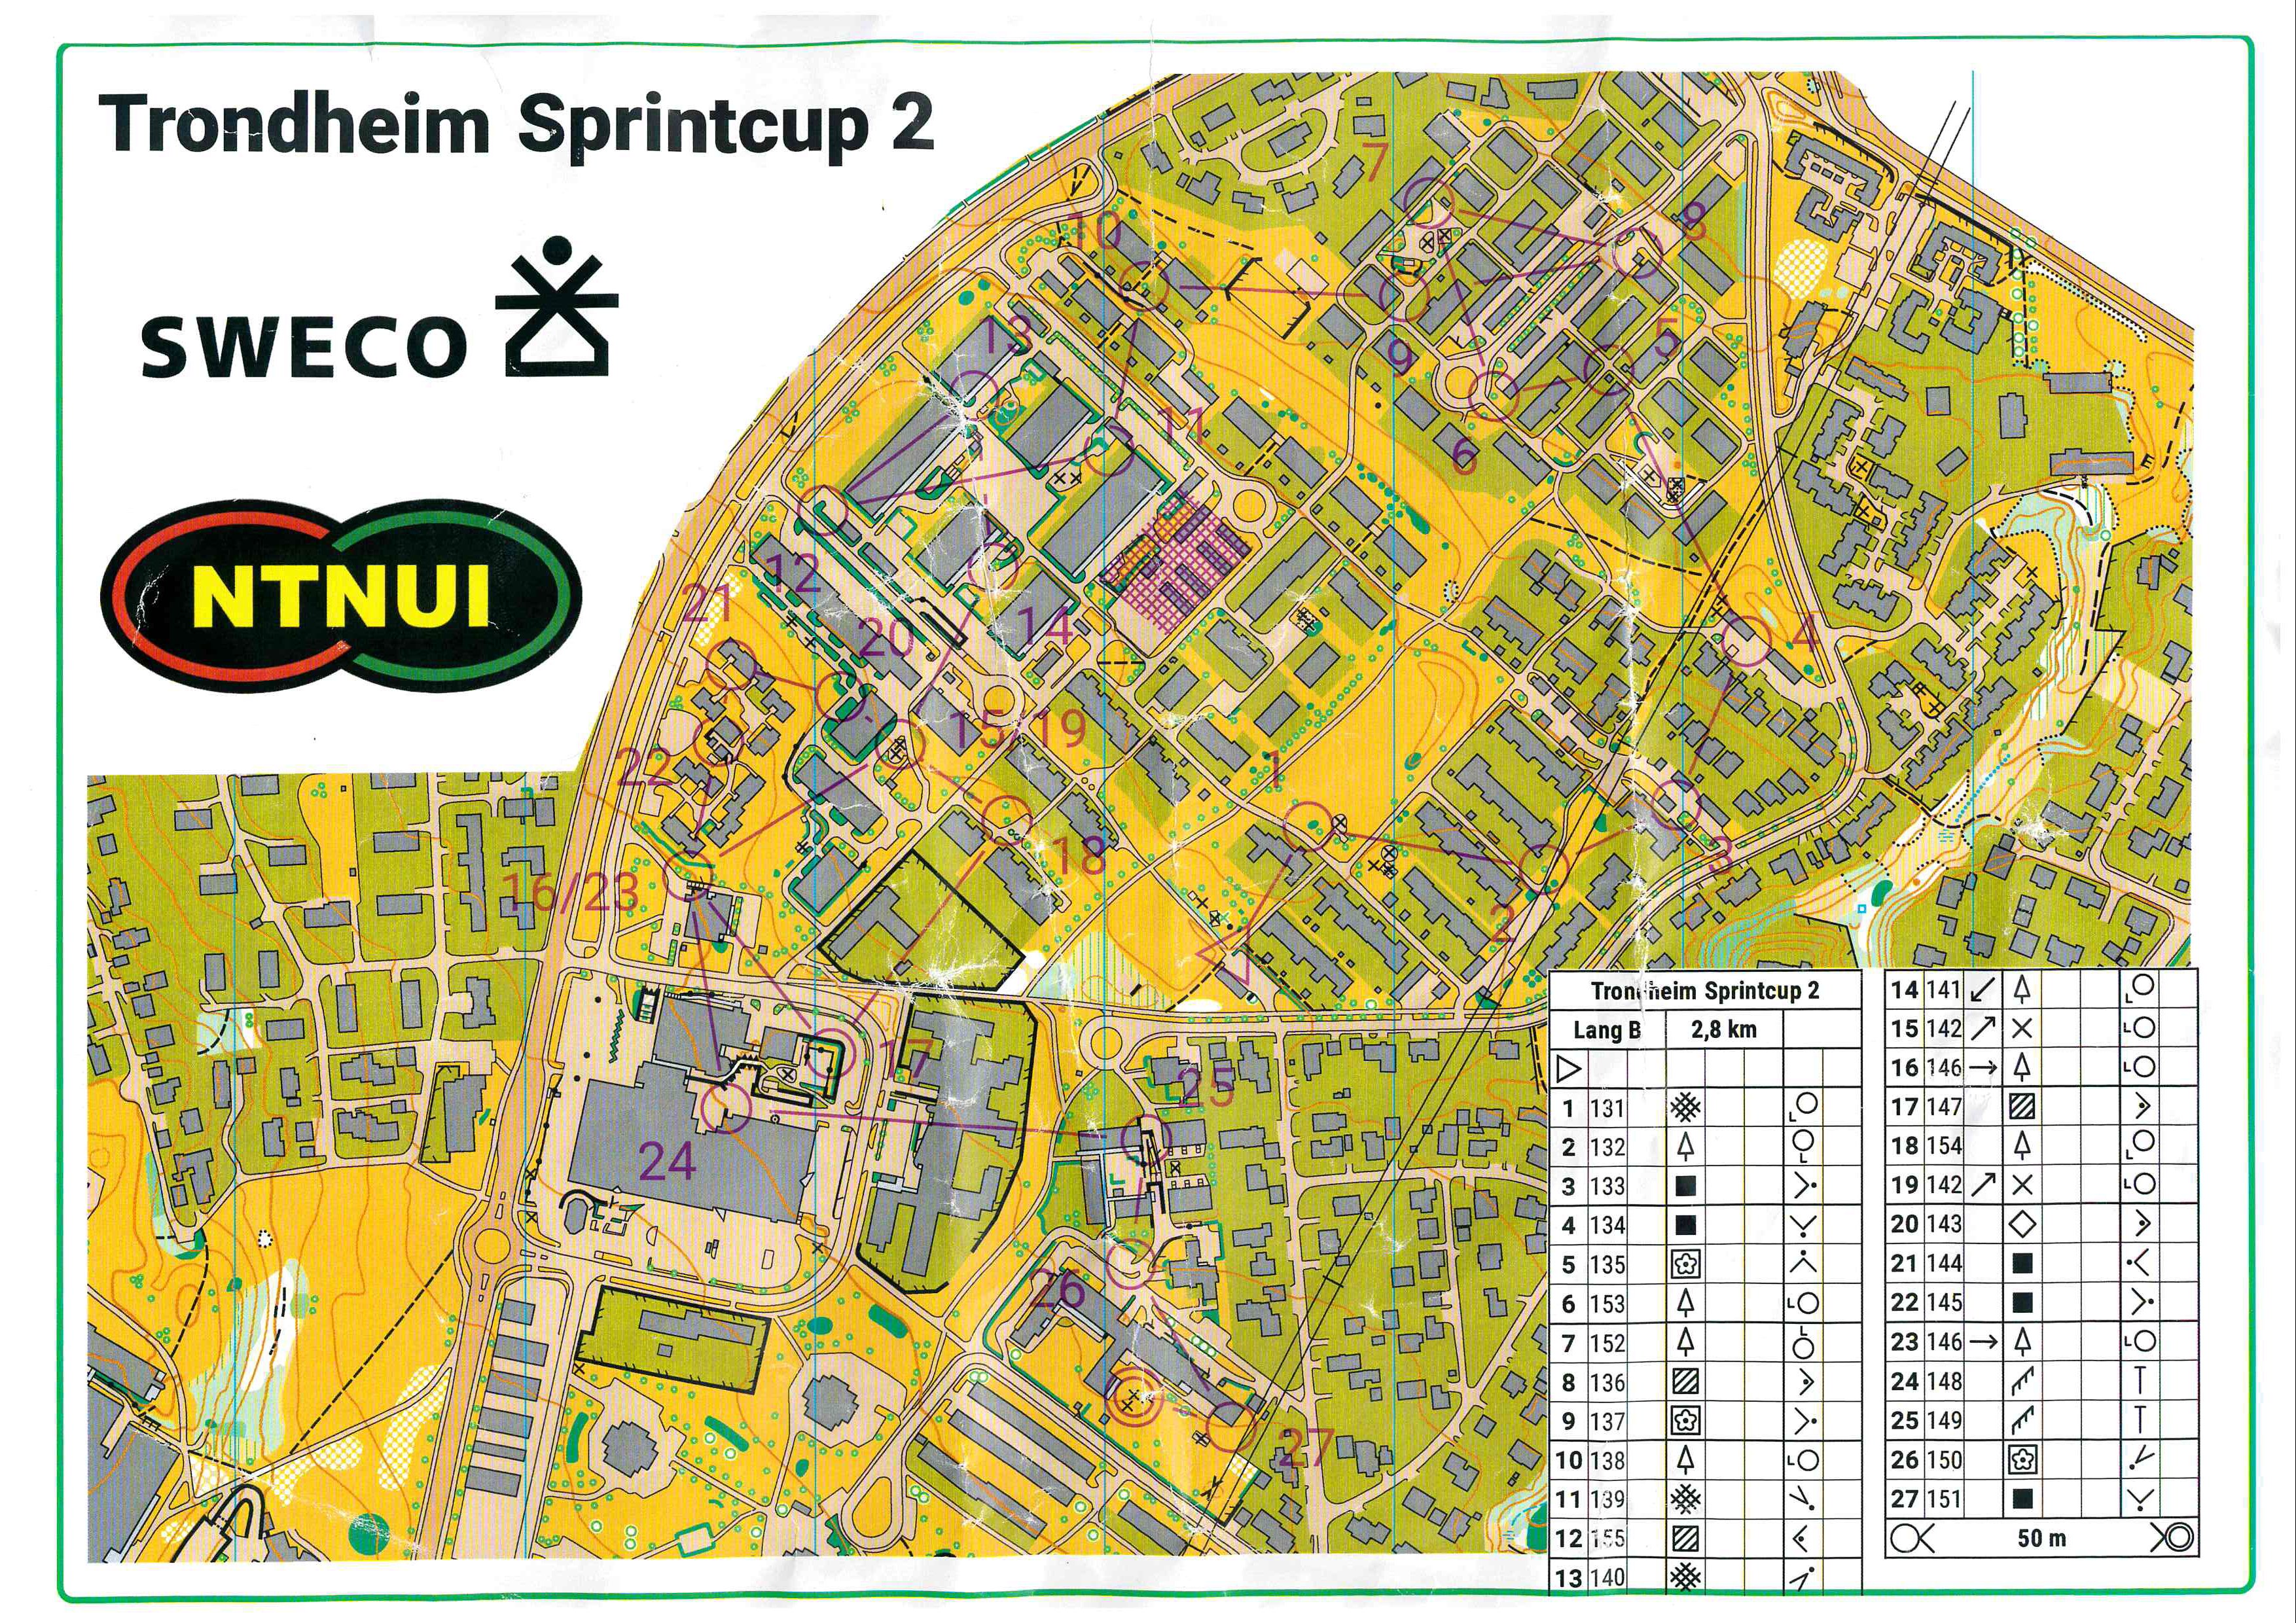 Trondheim Sprintcup # 2, Valentinlyst (2022-04-21)